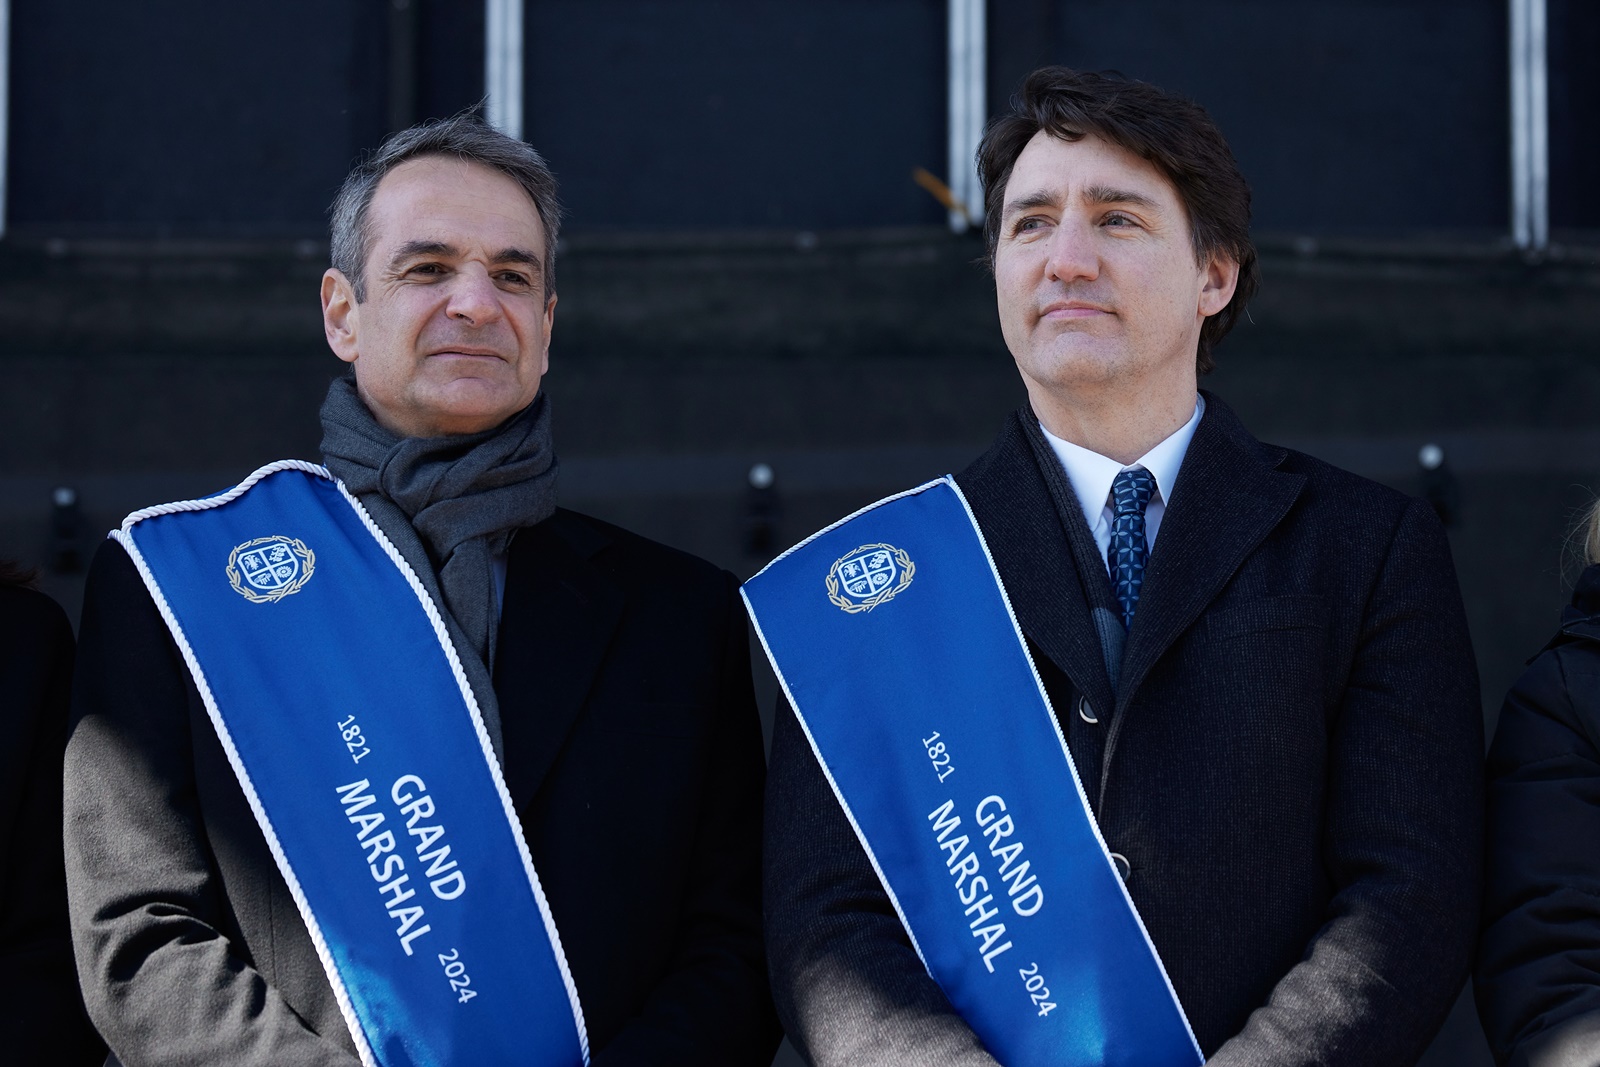 Μητσοτάκης Καναδάς: Ο πρωθυπουργός παρακολούθησε την παρέλαση ομογενών για την 25η Μαρτίου